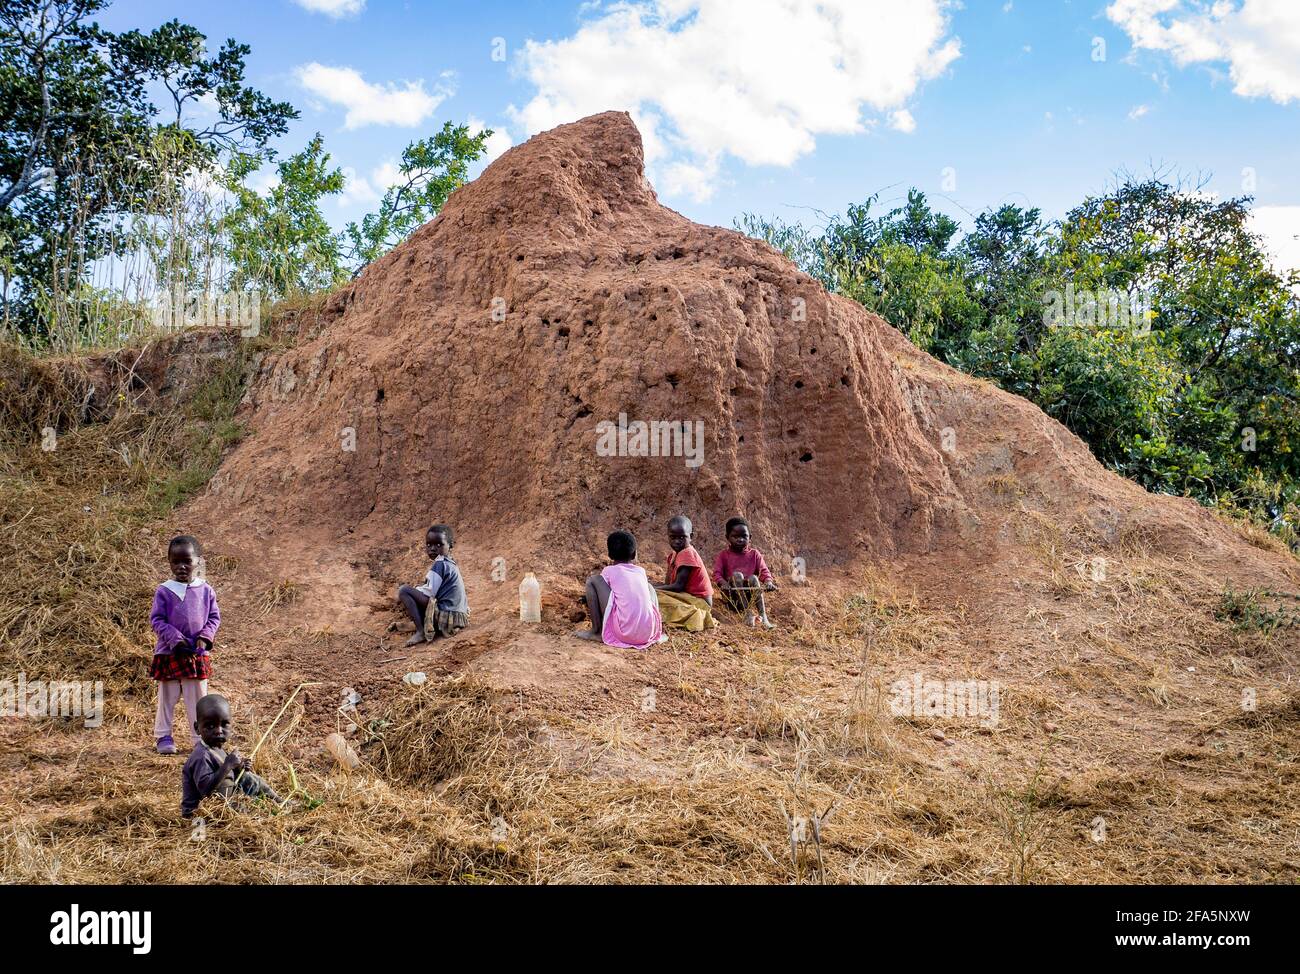 Enfants jouant autour d'un termite dans le nord du Malawi Banque D'Images